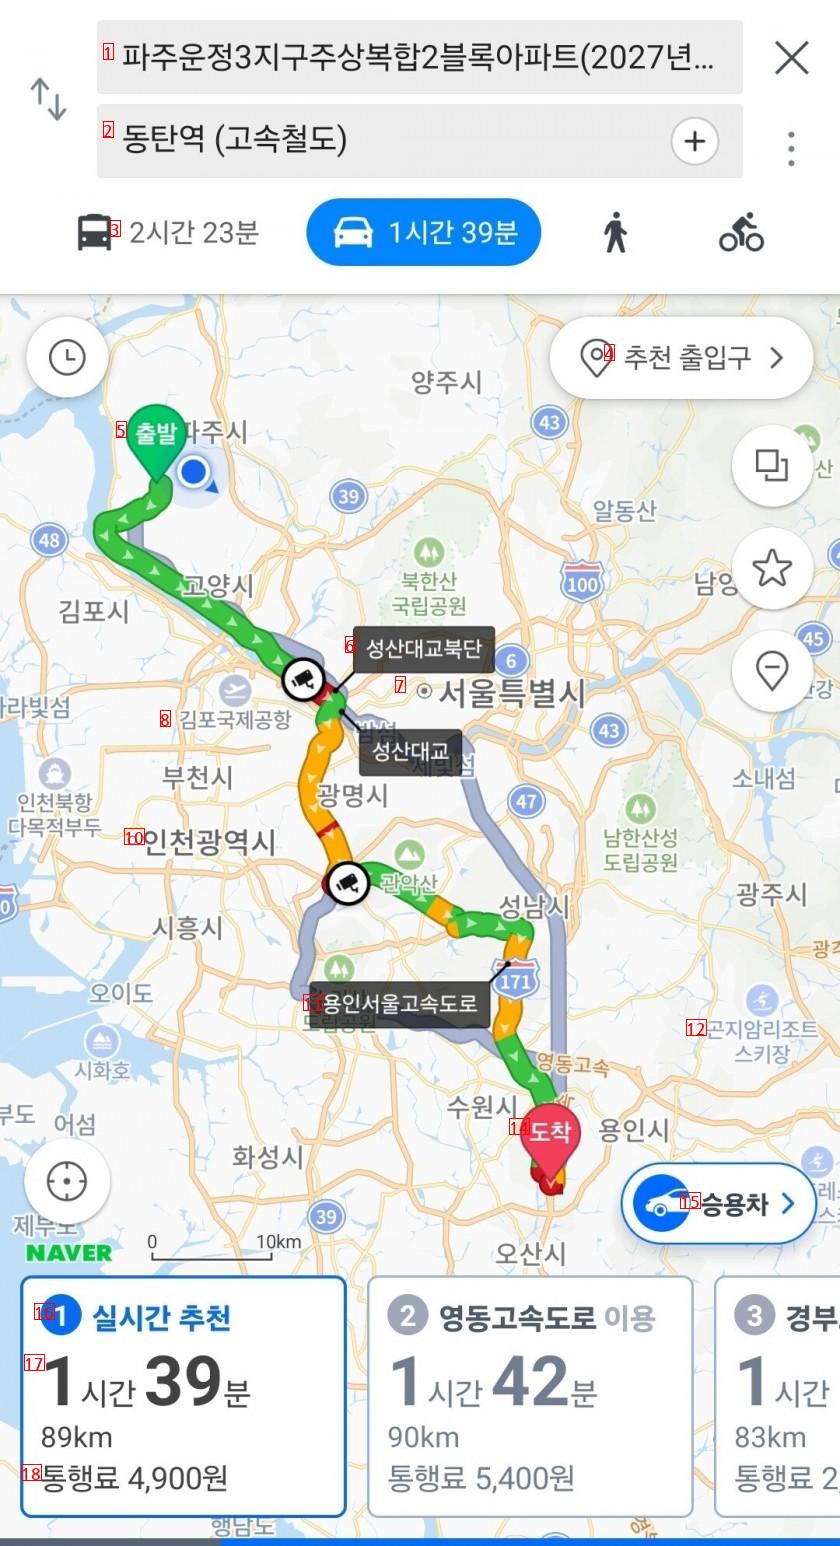 수도권 광역급행철도 GTX 요금표 공개.jpg